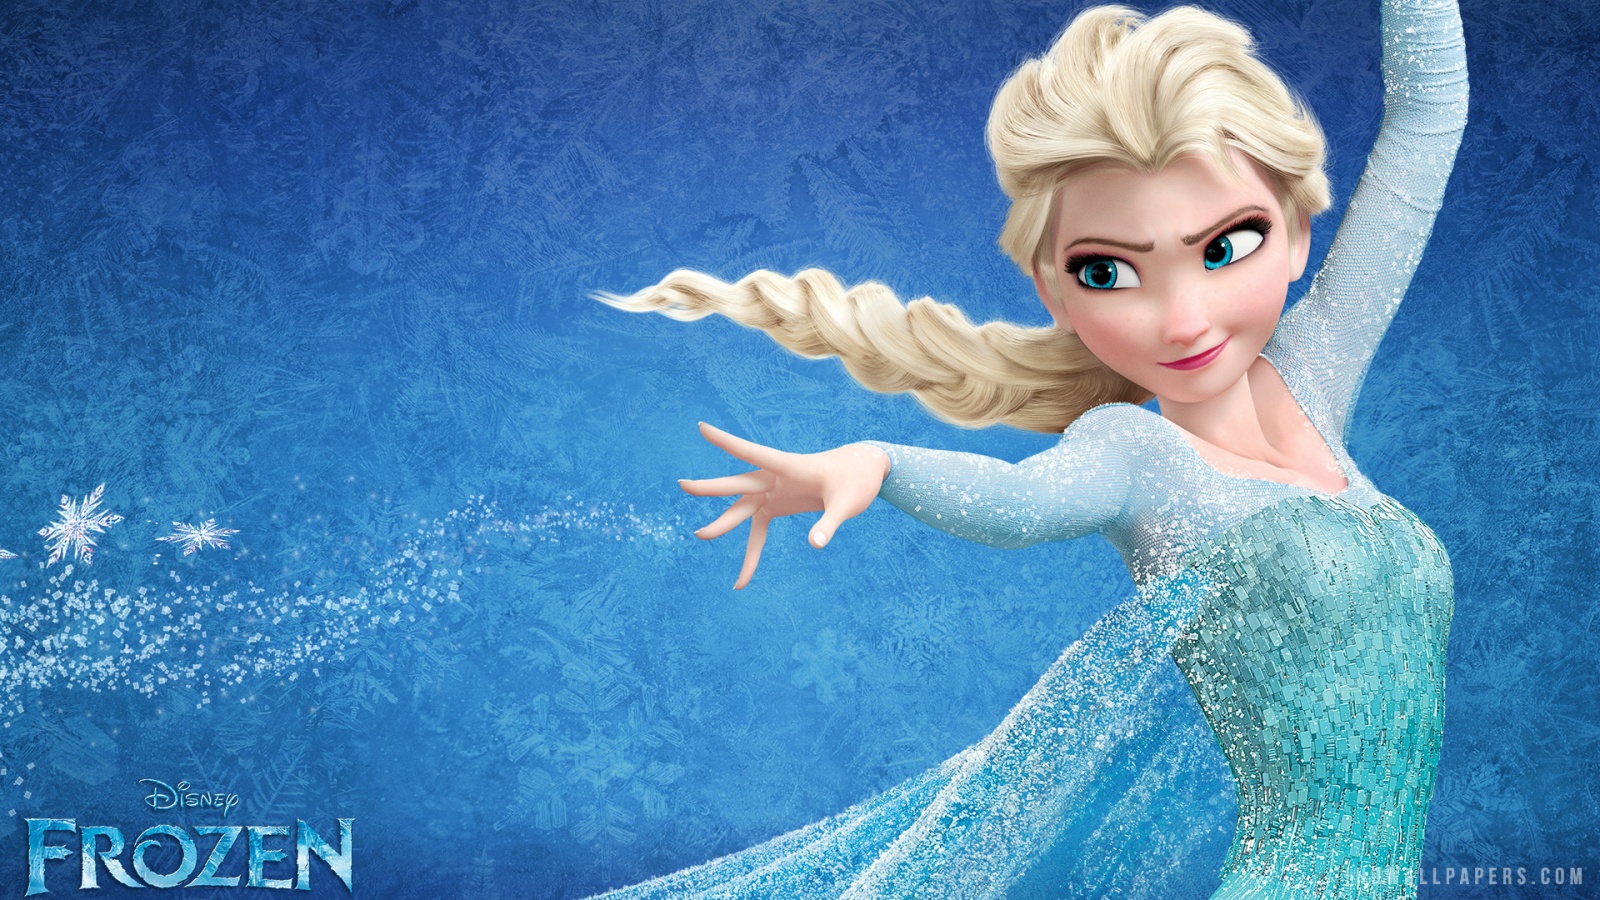 Elsa in Frozen HD Wallpaper   iHD Wallpapers